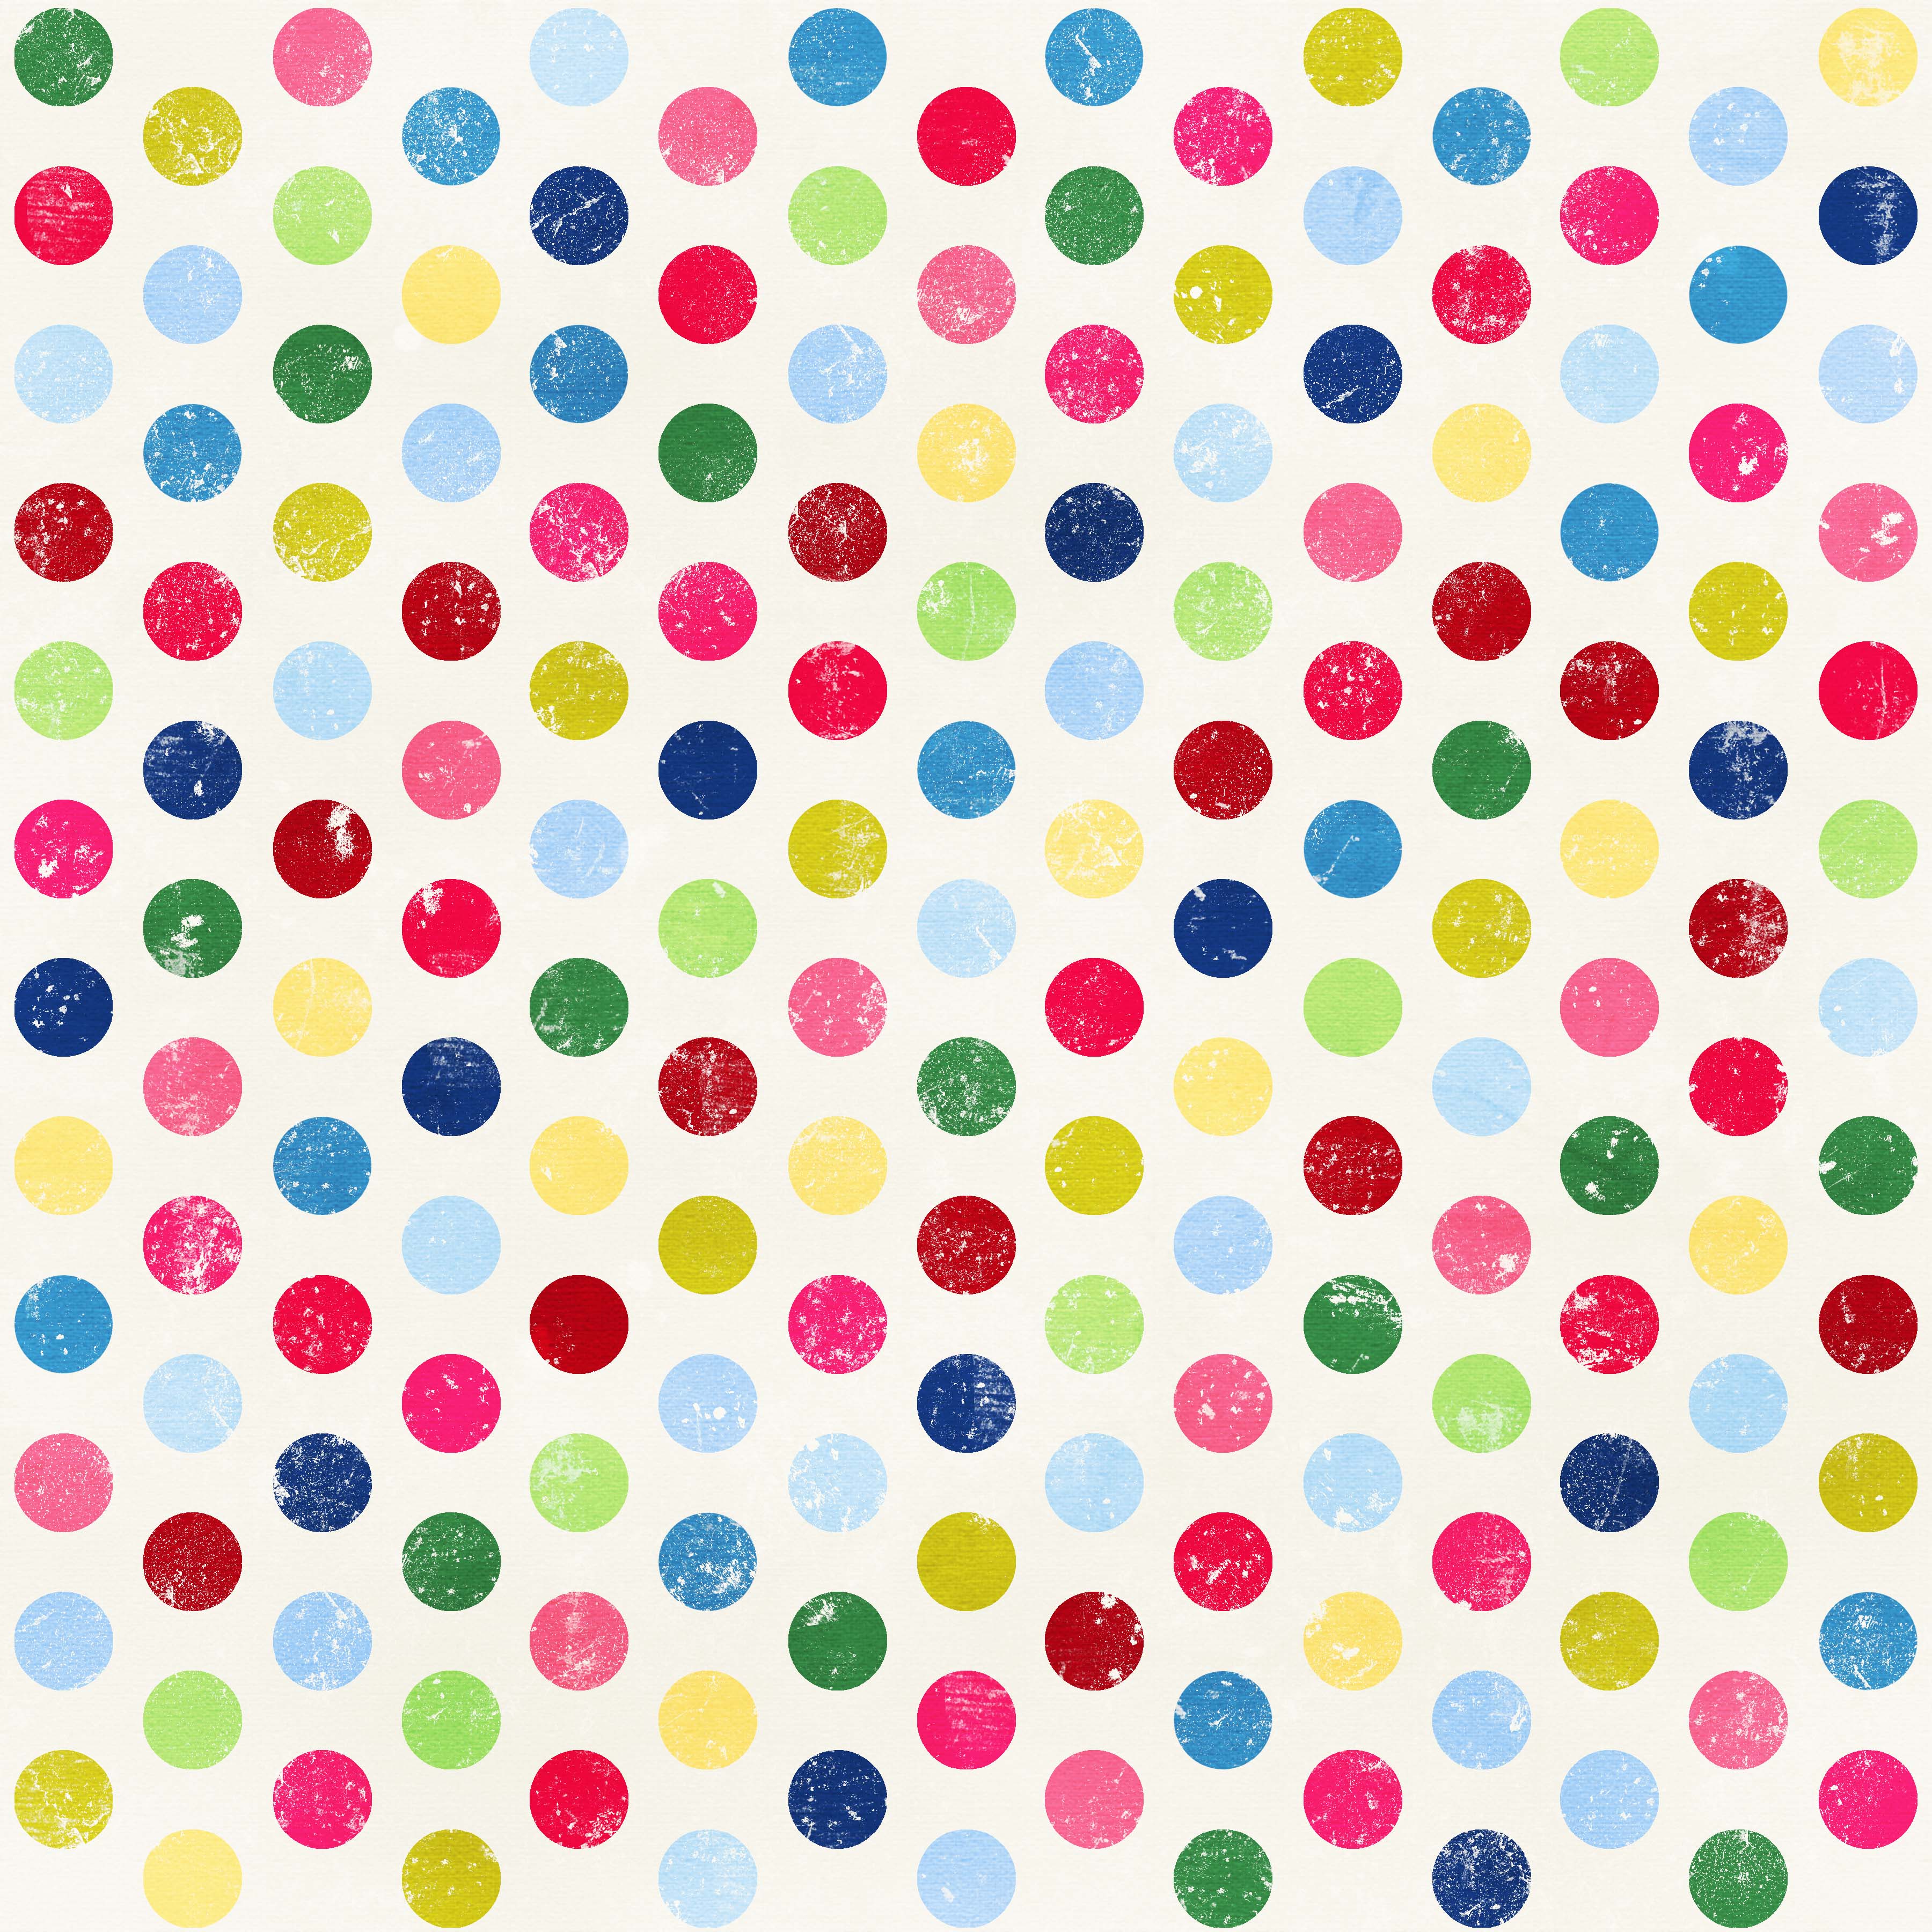 Creative Mindly Wallpaper Polka Dots Fondos De Lunares